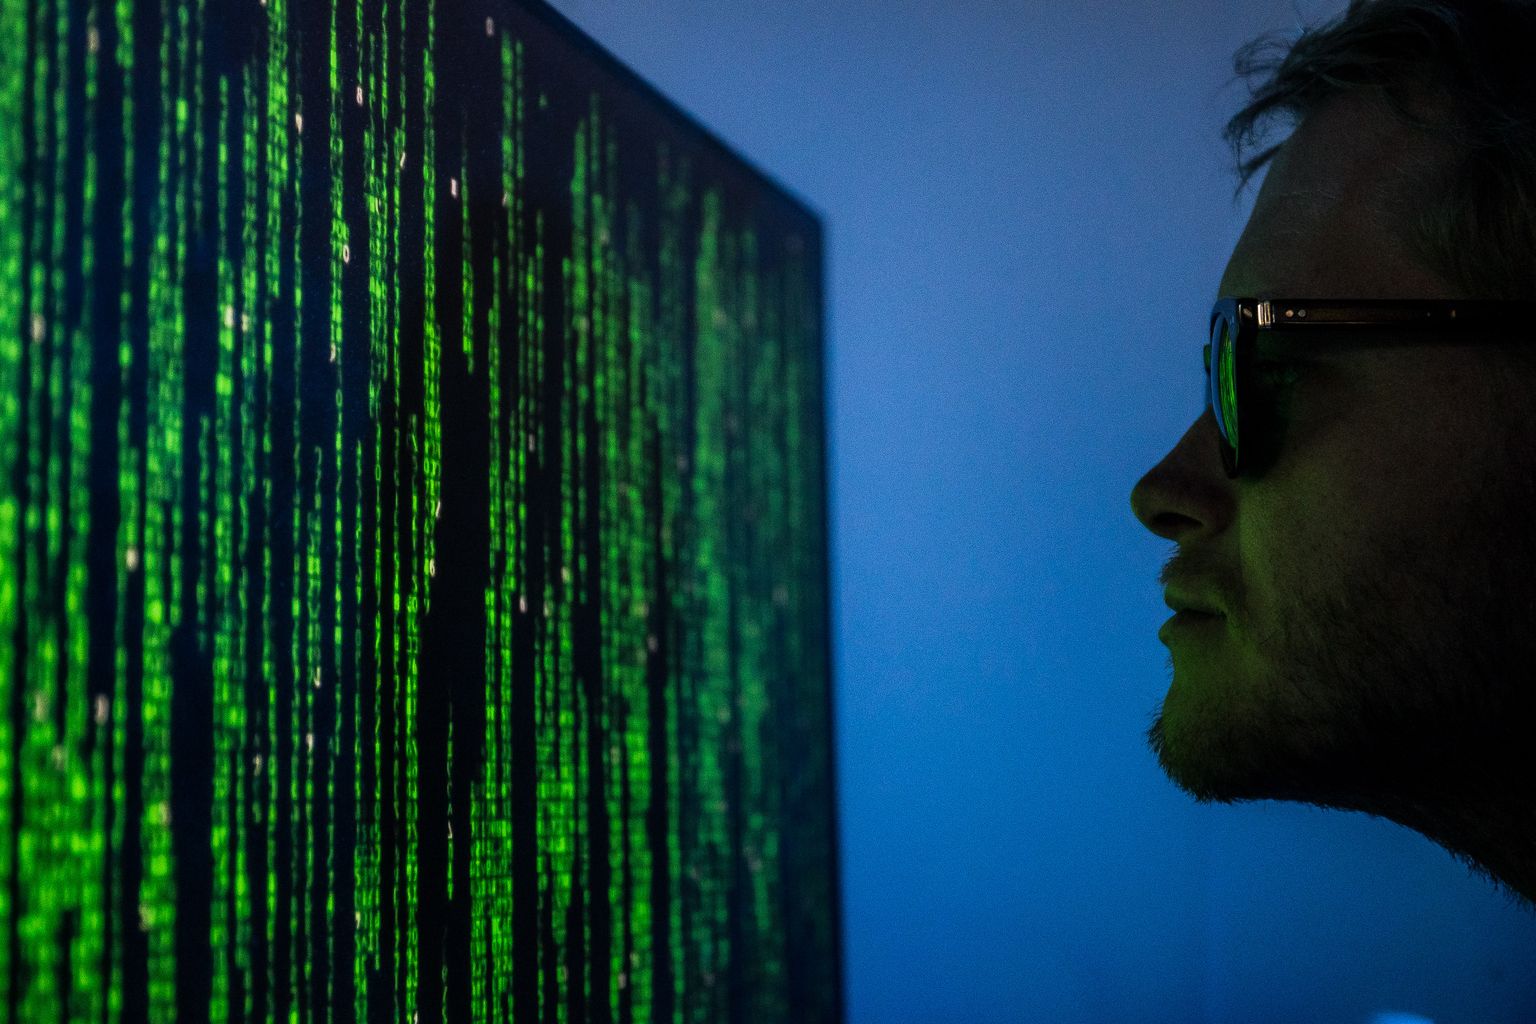 Людей часто склоняют к тому, чтобы загружать на свои компьютеры различные программы, с помощью которых злоумышленники могут получить личные данные человека, в том числе его банковские пароли и PIN-коды.